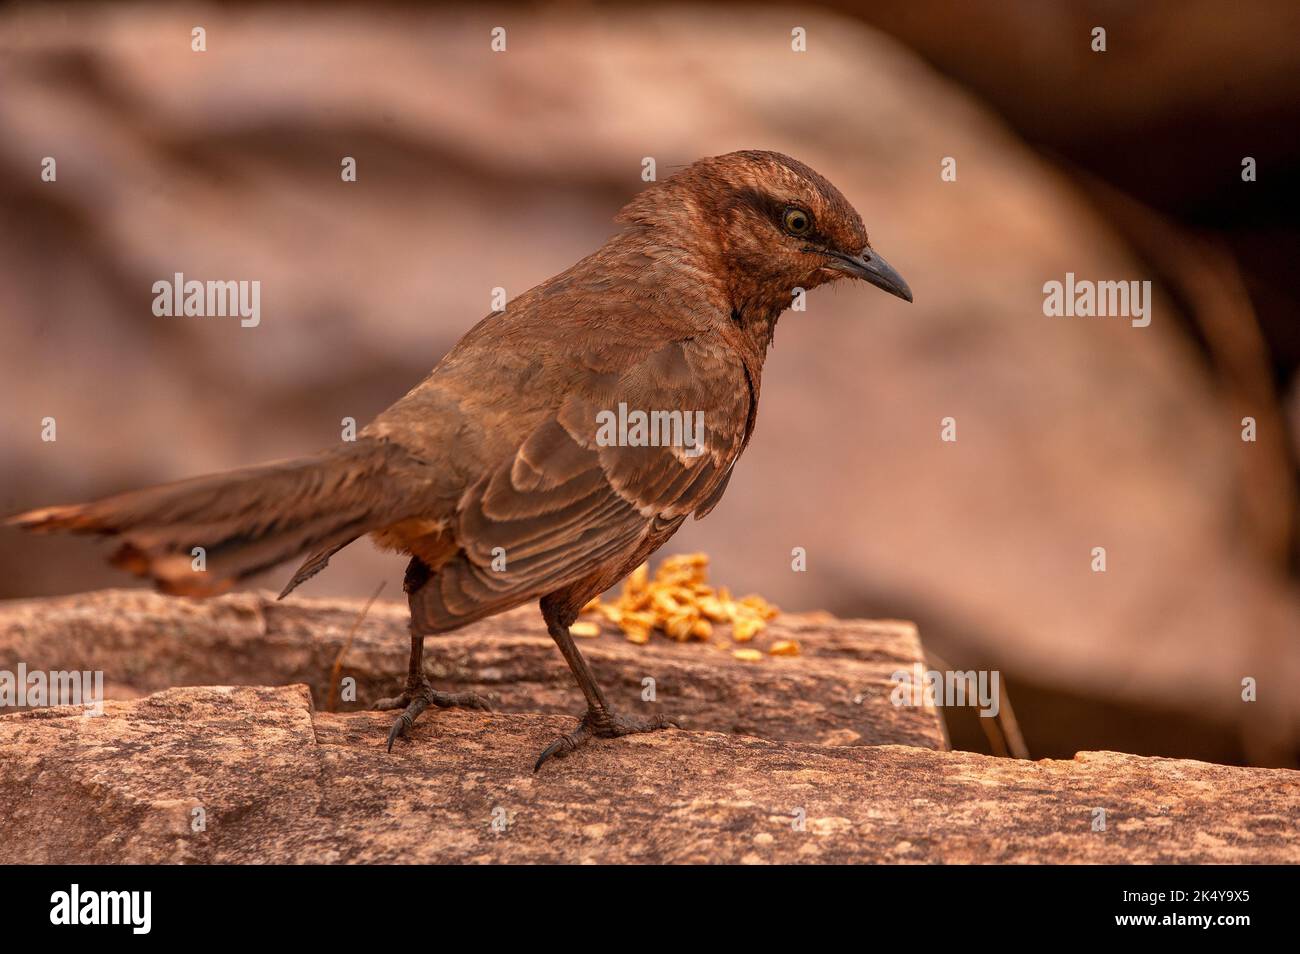 sabiá-do-campo o Mockingbird (Mimus saturninus) è un uccello della famiglia dei Passeriformes ordem e dei Mimidae, della Serra da Canastra, Minas Gerais, Brasile Foto Stock